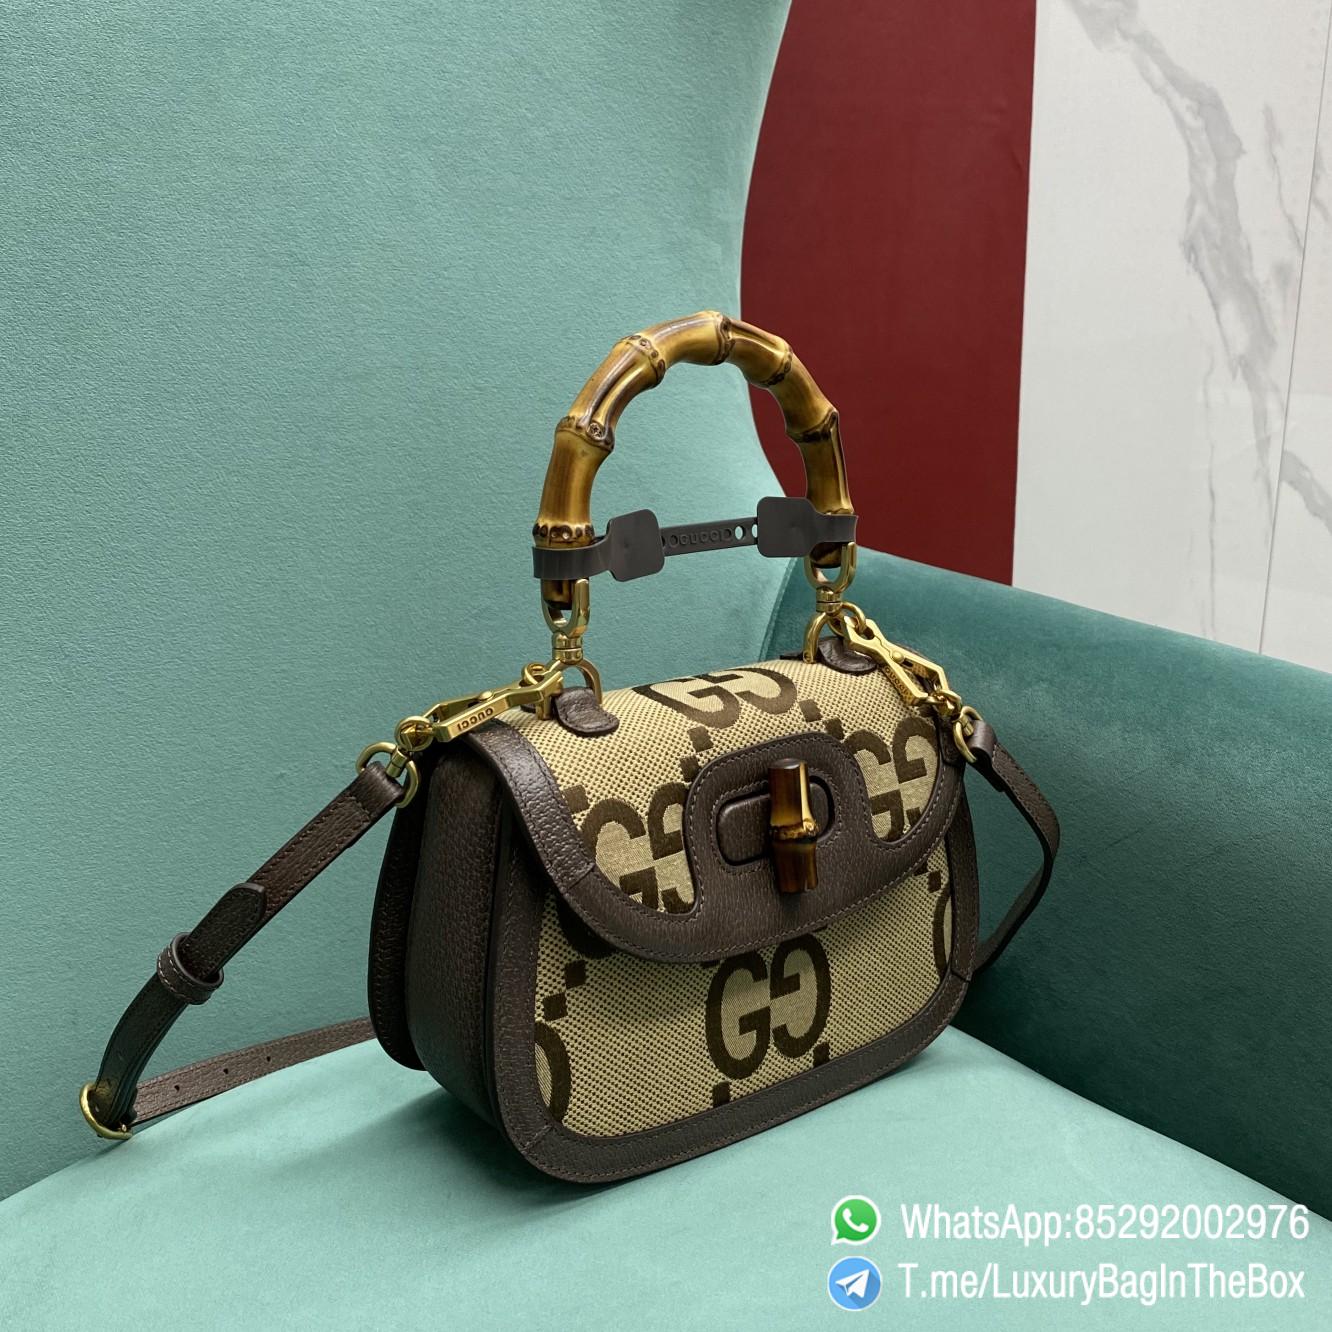 Top Quality Luxury Handbag Bamboo 1947 Jumbo GG Small Top Handle Bag SKU ‎675797 UKMDT 2570 03